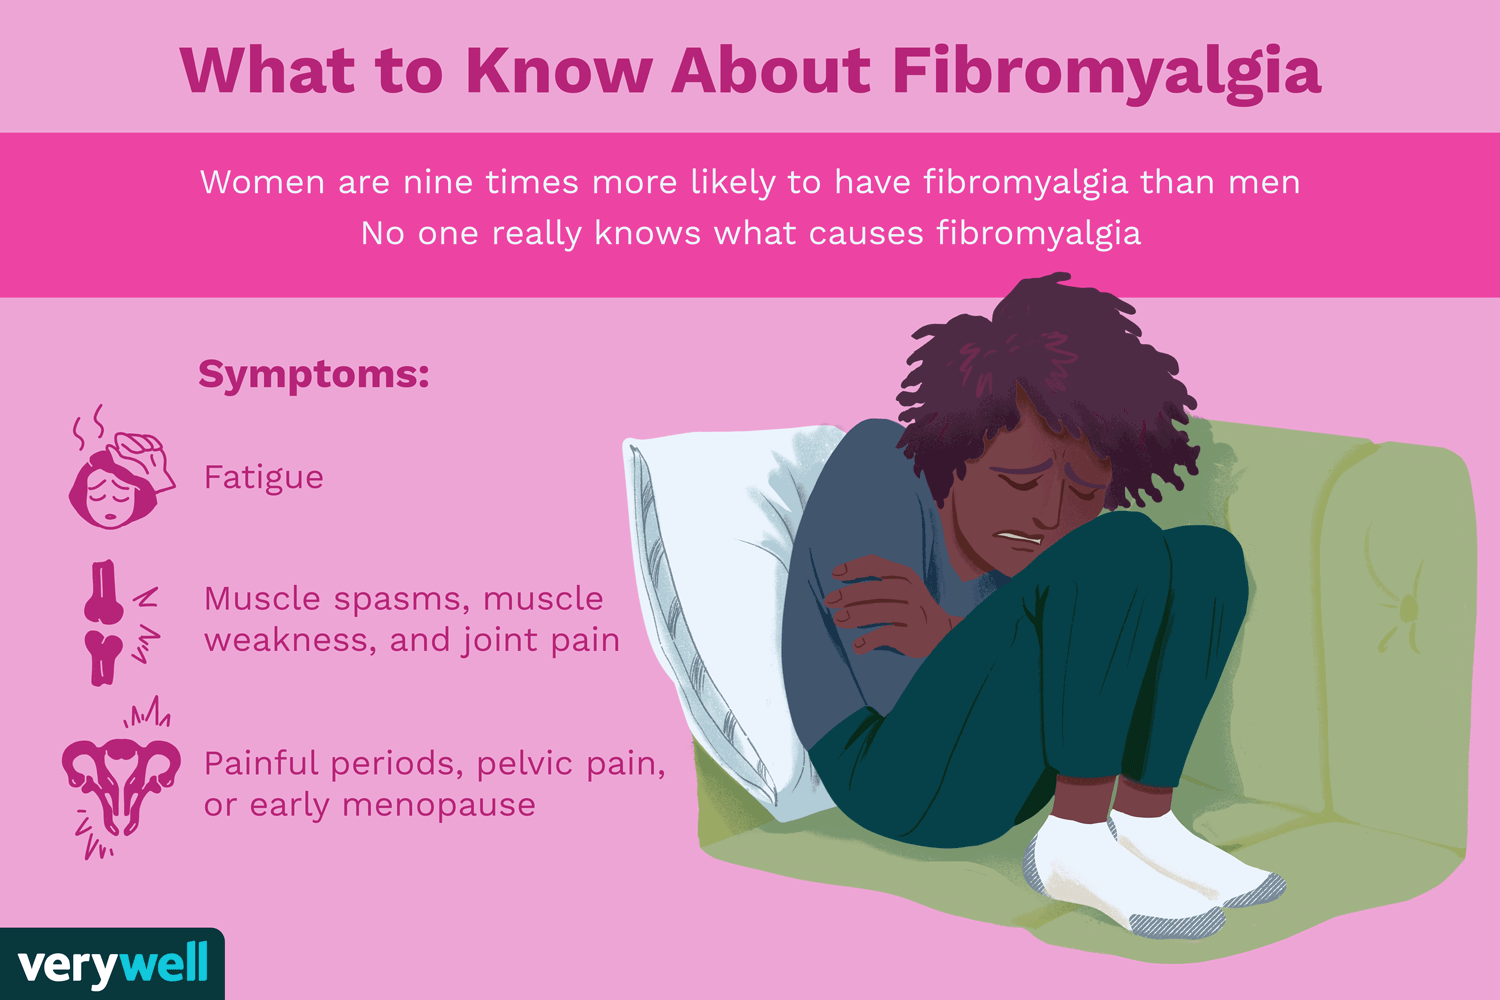 A factsheet about fibromyalgia. 